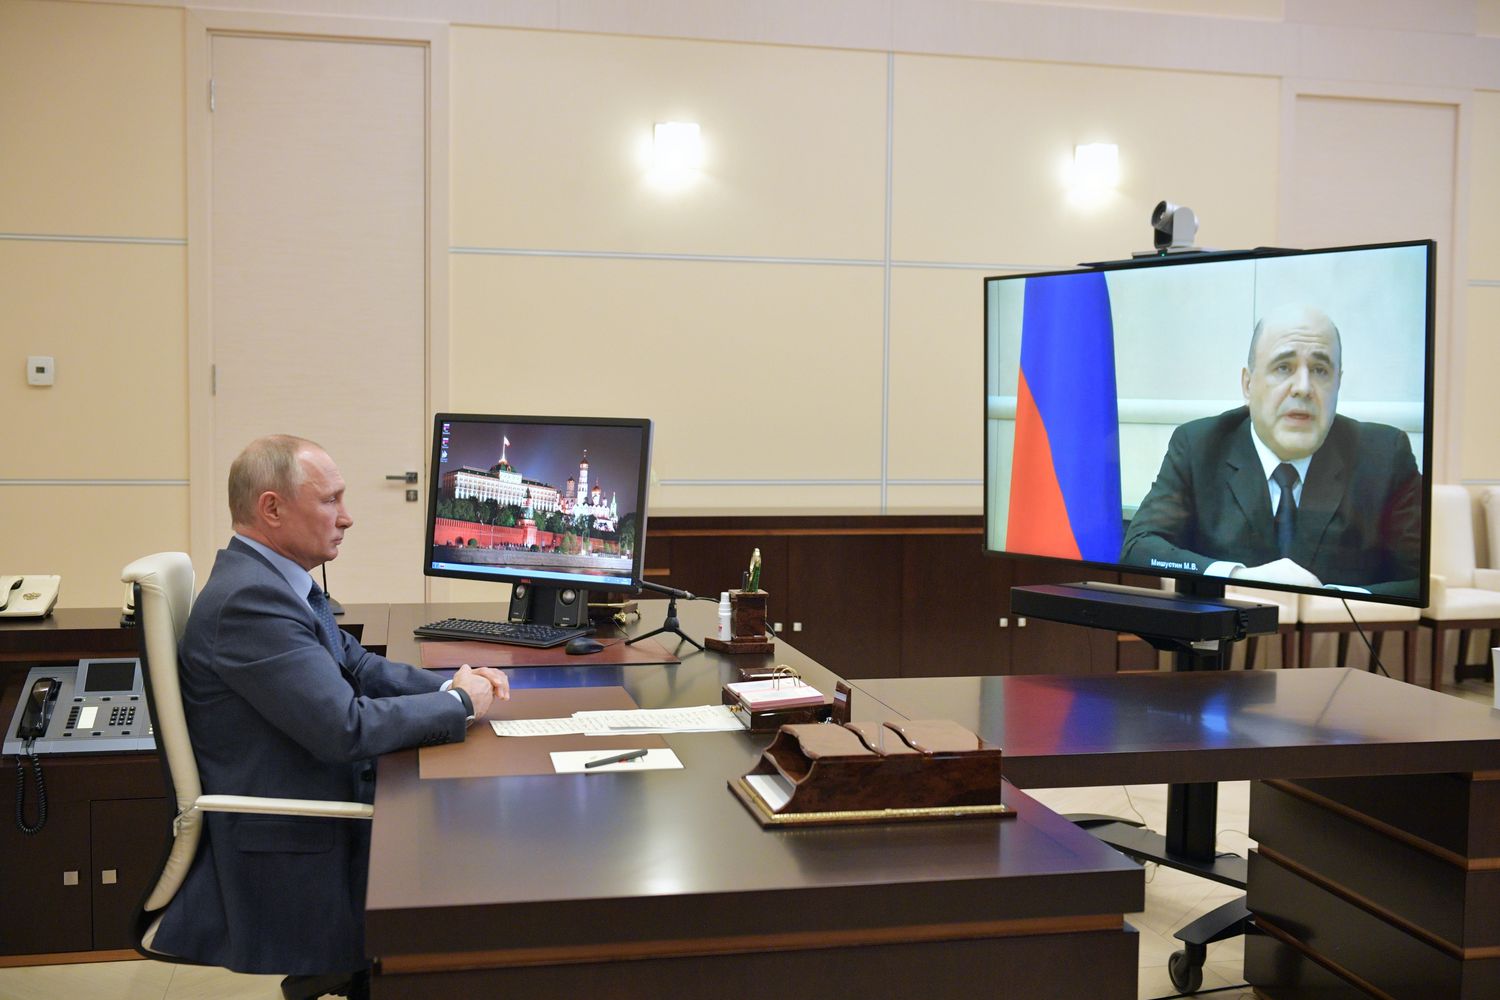 Mishustin informó a Putin de su enfermedad por videollamada. Foto: Alexei Druzhinin/AP